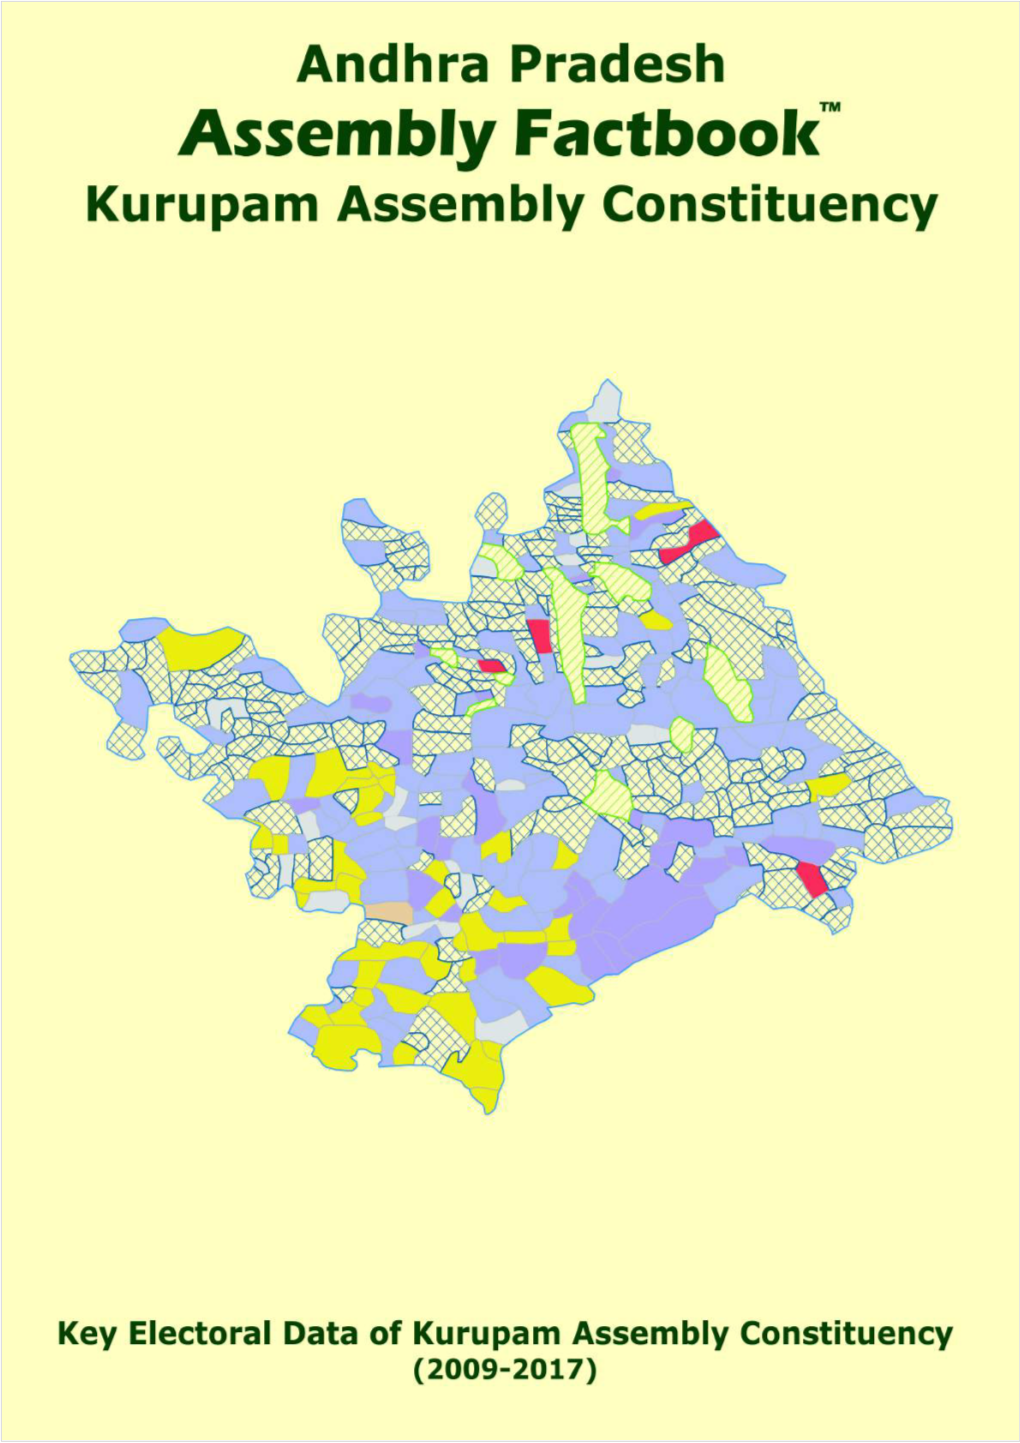 Kurupam Assembly Andhra Pradesh Factbook